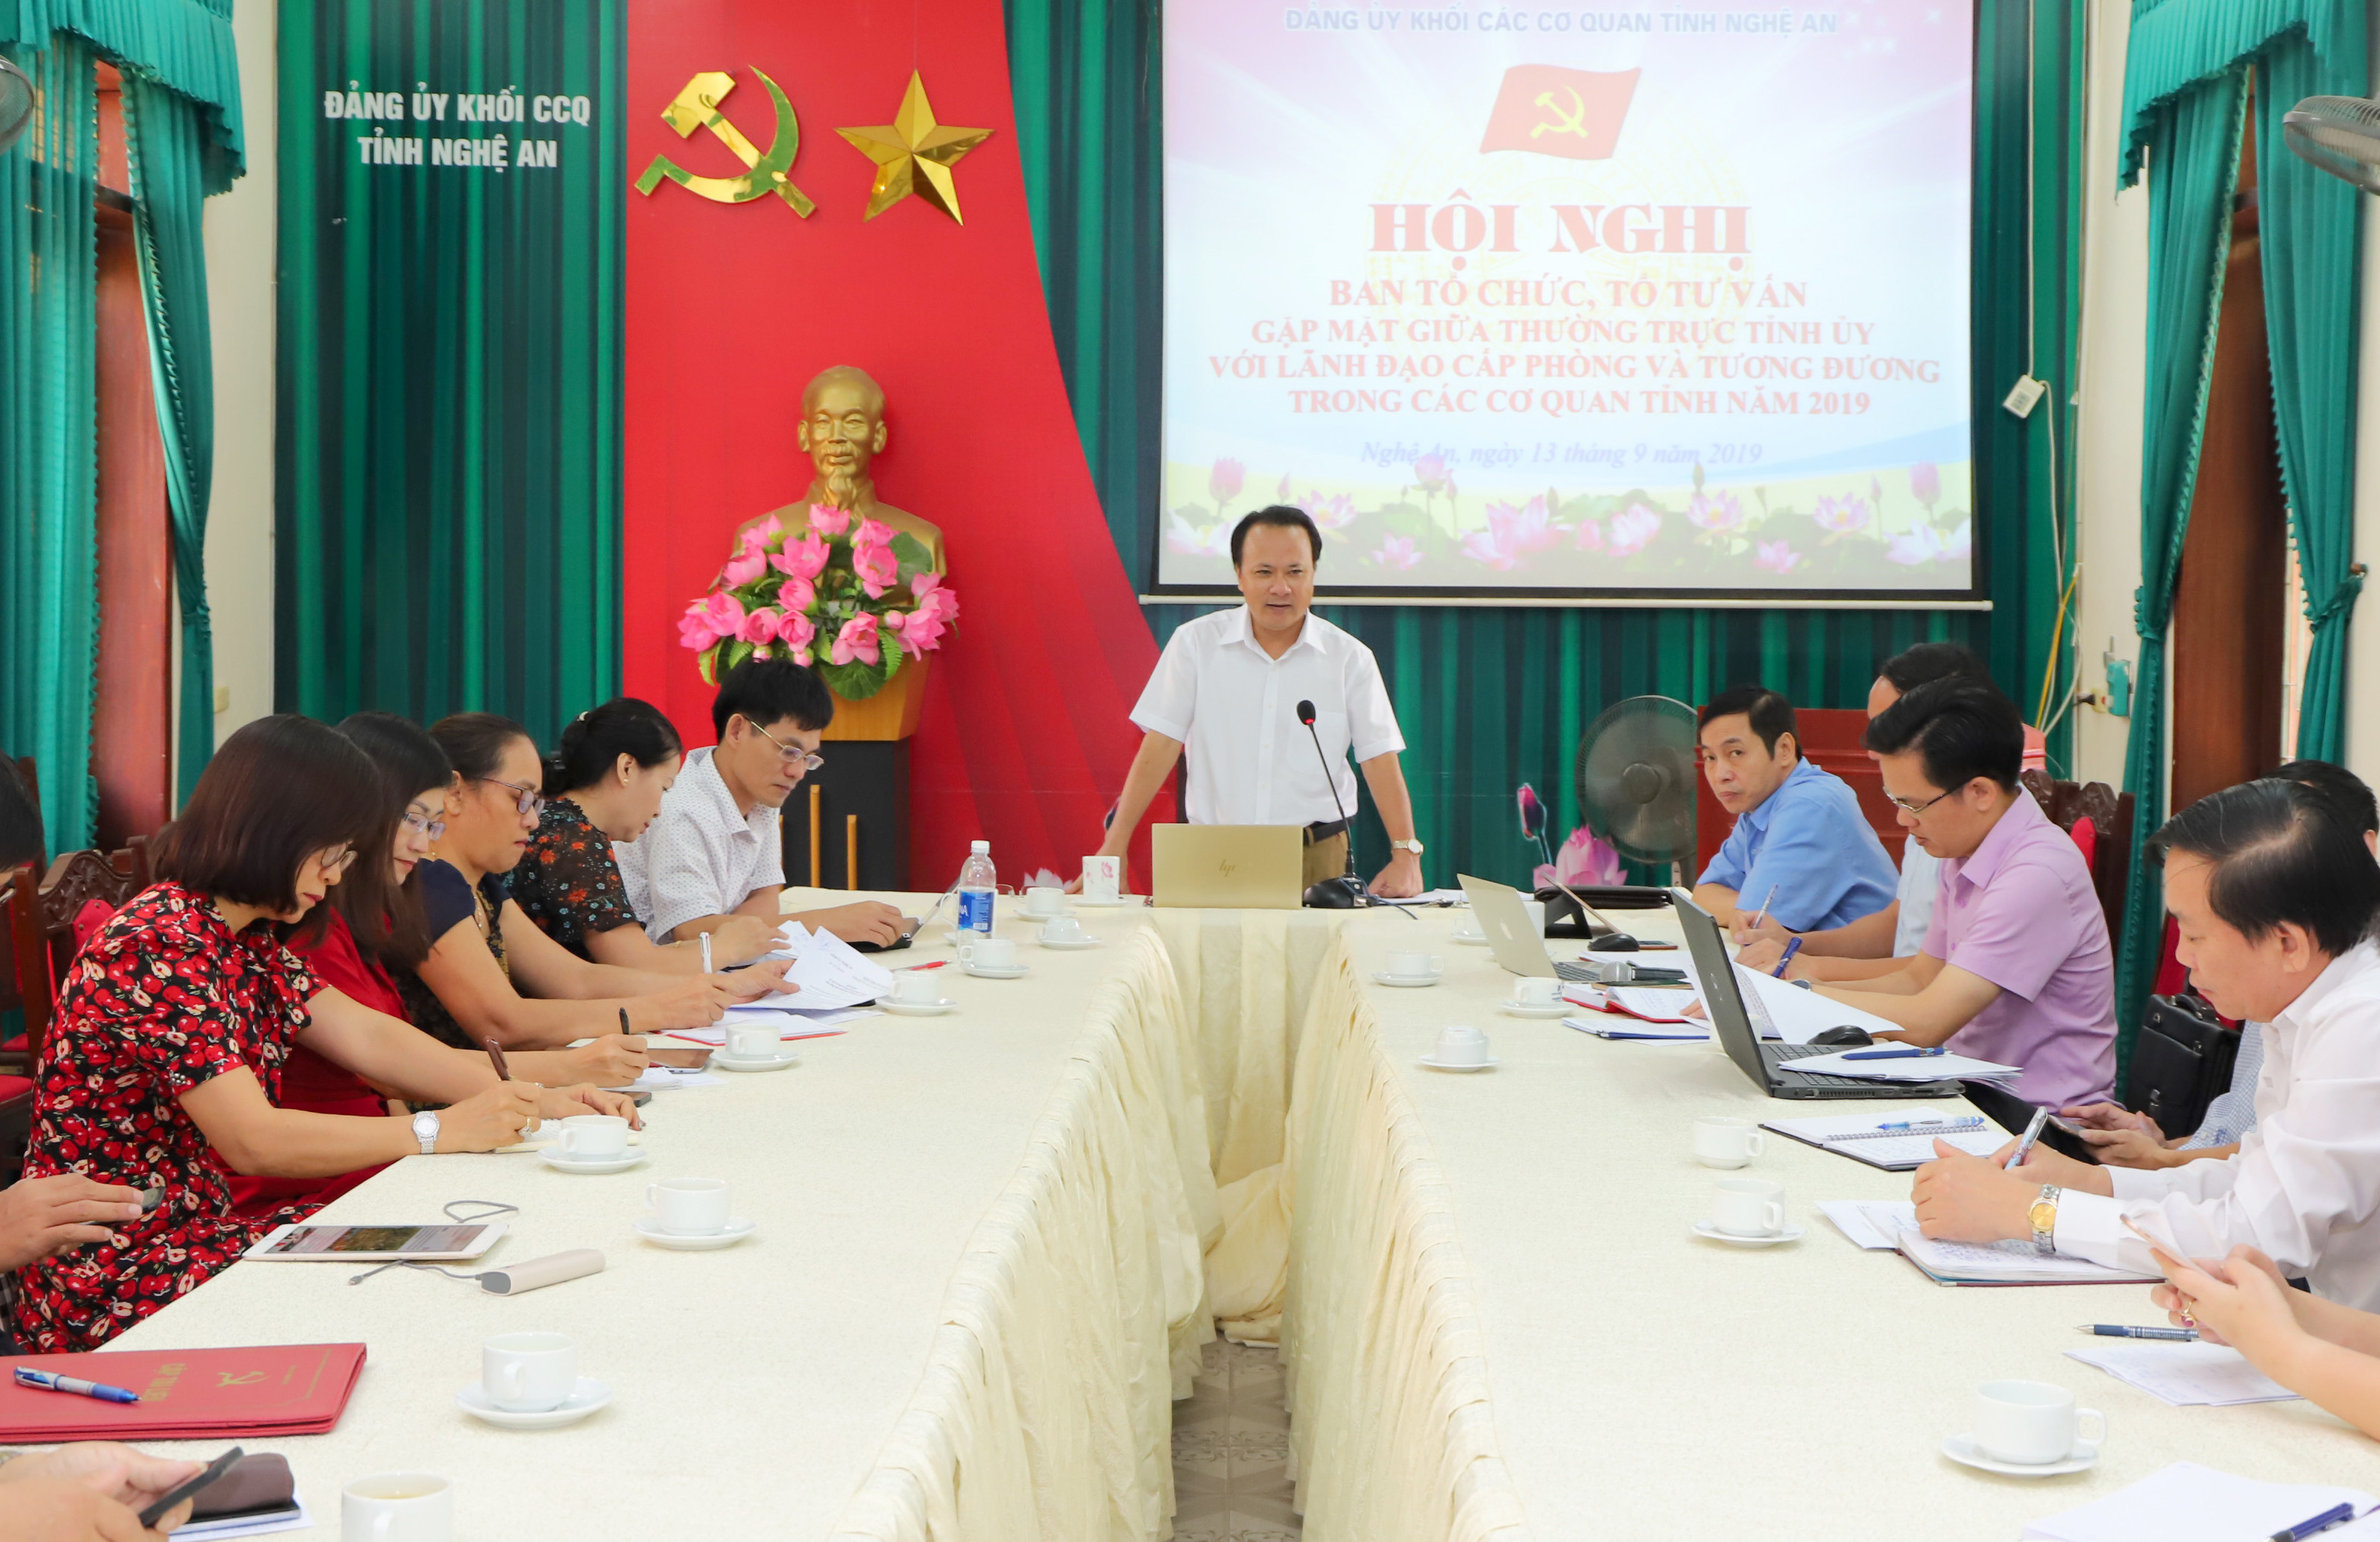 Một cuộc họp của Đảng ủy Khối CCQ tỉnh. Ảnh: Thành Duy